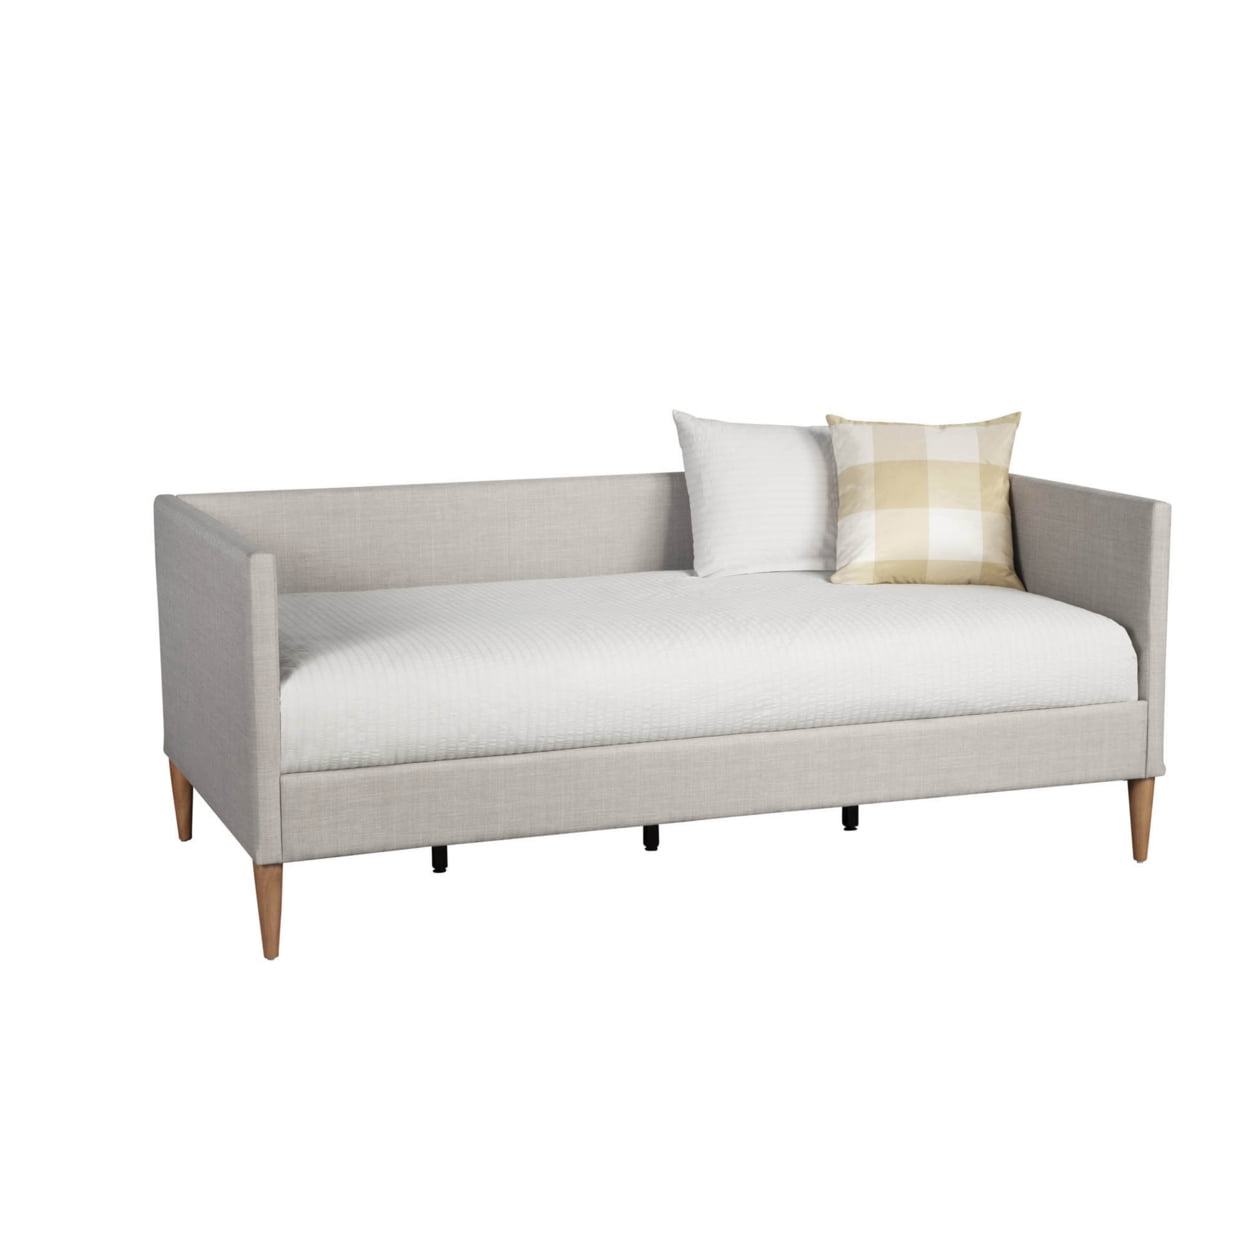 Picture of Alpine Furniture 1096T Britney Upholstered Platform Day Bed, Light Grey Linen